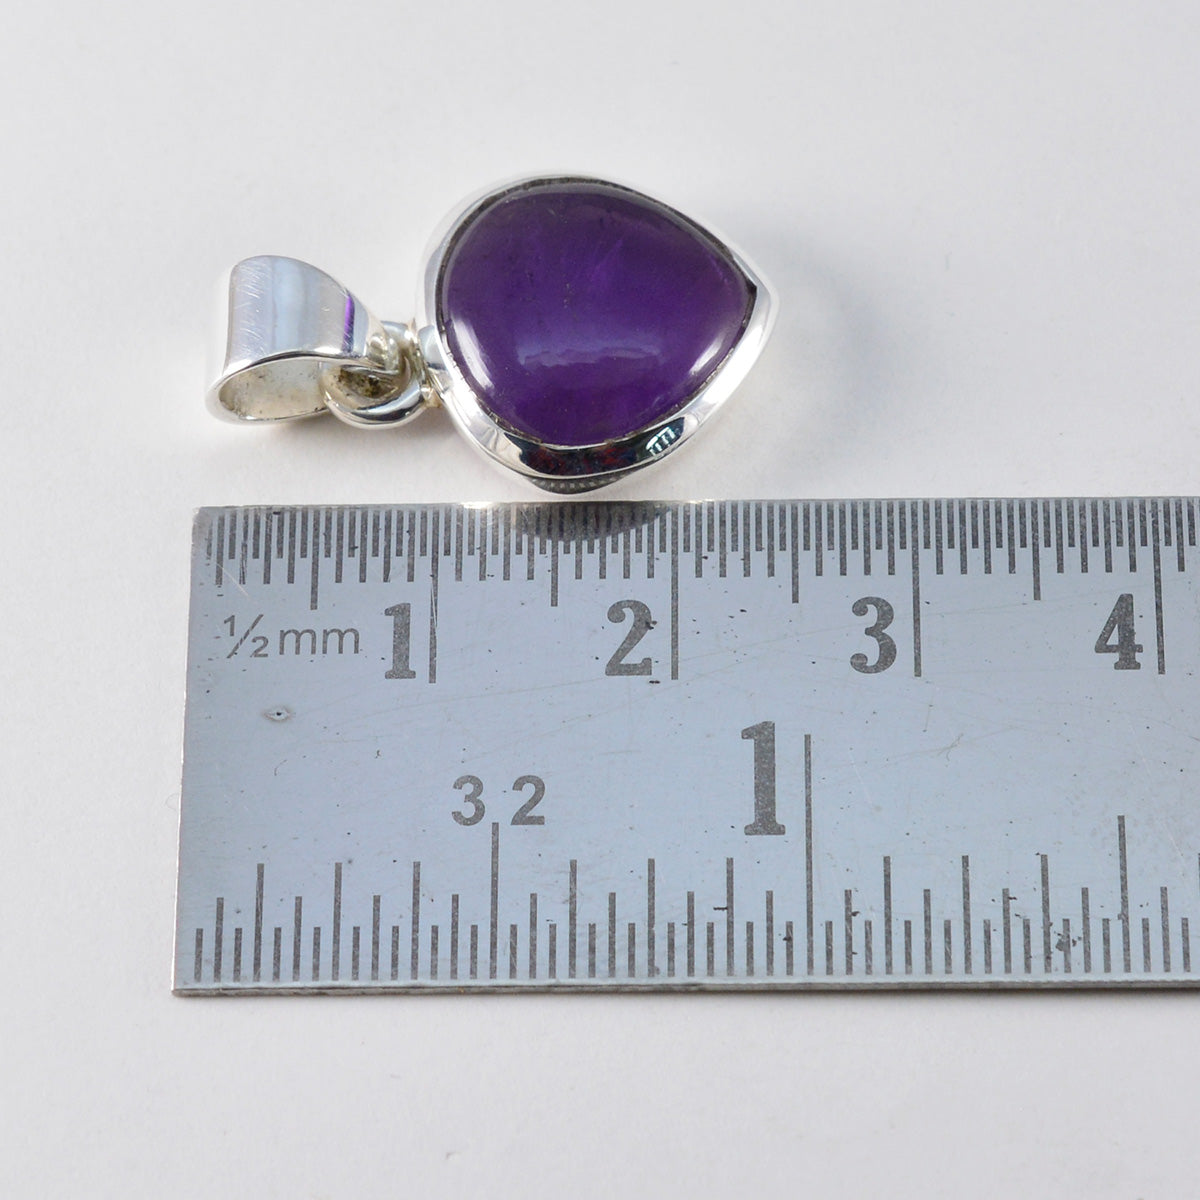 Riyo Graceful Gems Heart Cabochon Purple Amethyst Solid Silver Pendant Gift For Wedding